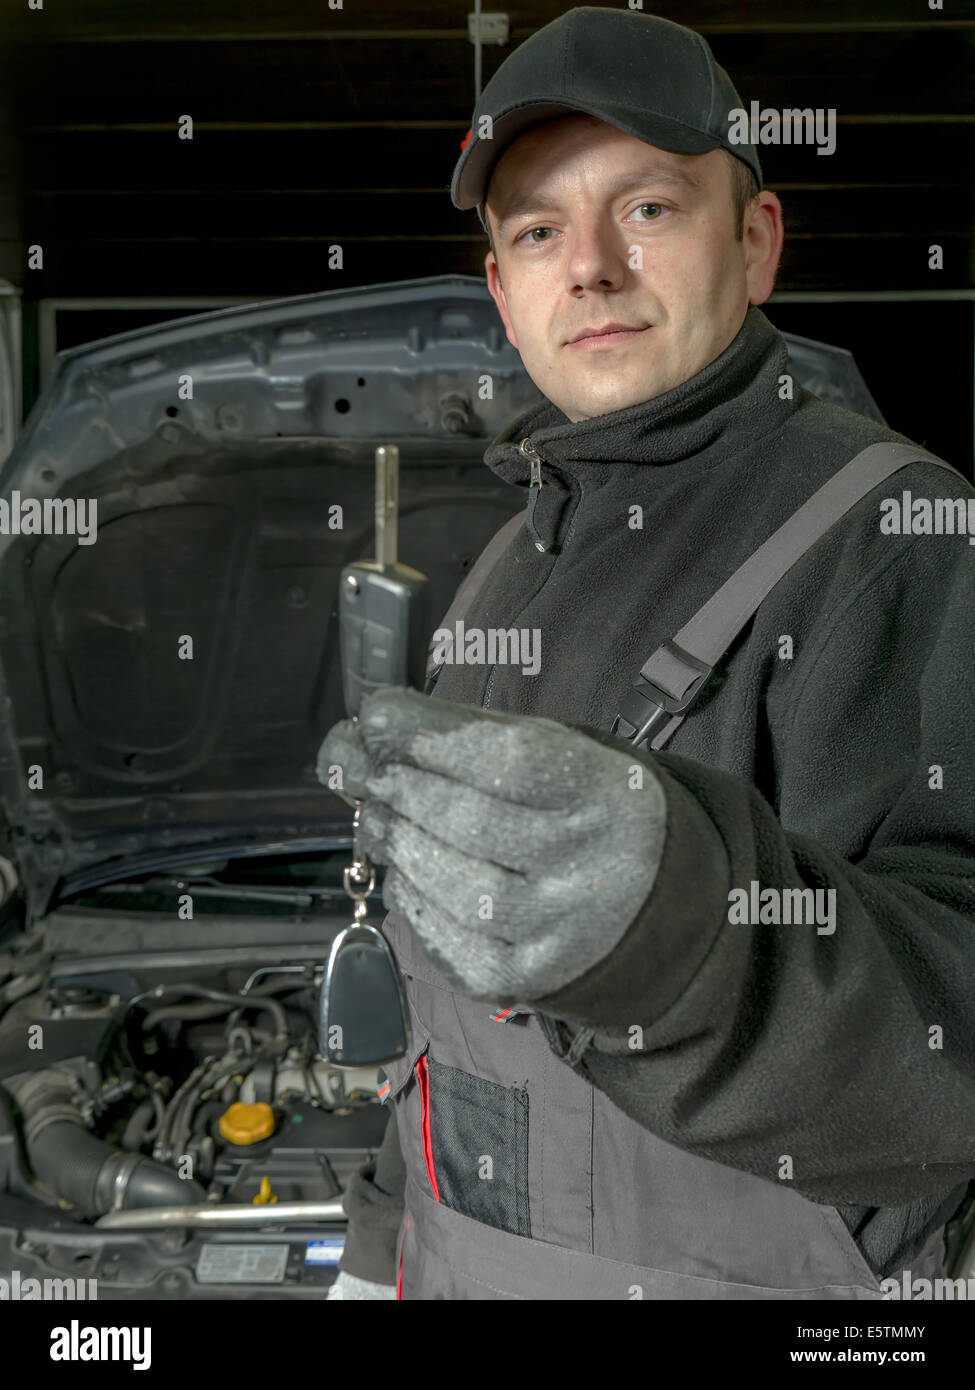 Mecanico Auto sosteniendo una llave del coche del coche reparado a la espera de ser entregados al cliente Foto de stock